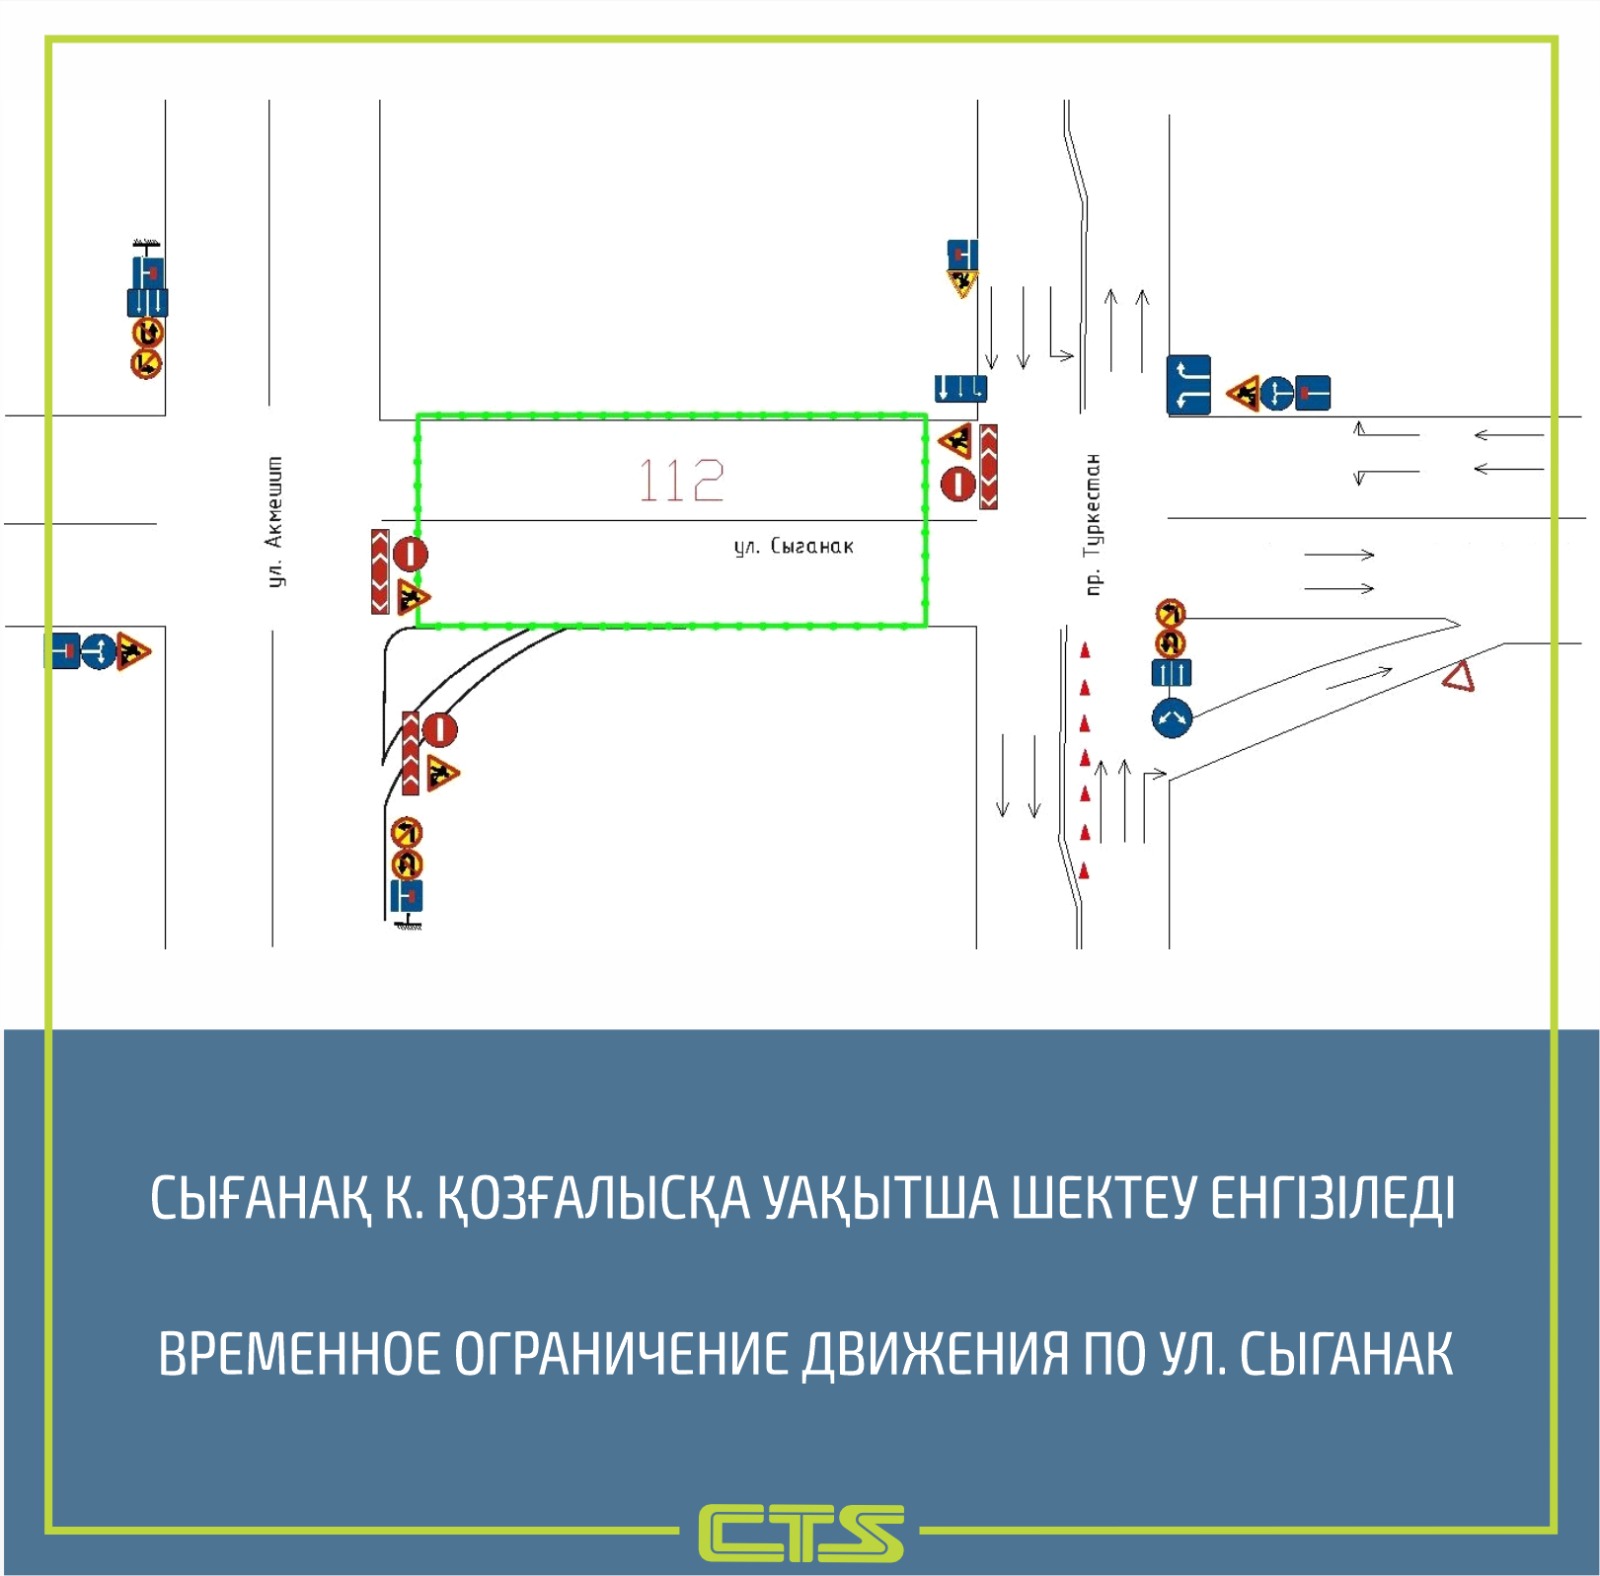 Организацию дорожного движения по улице Сыганак временно изменят